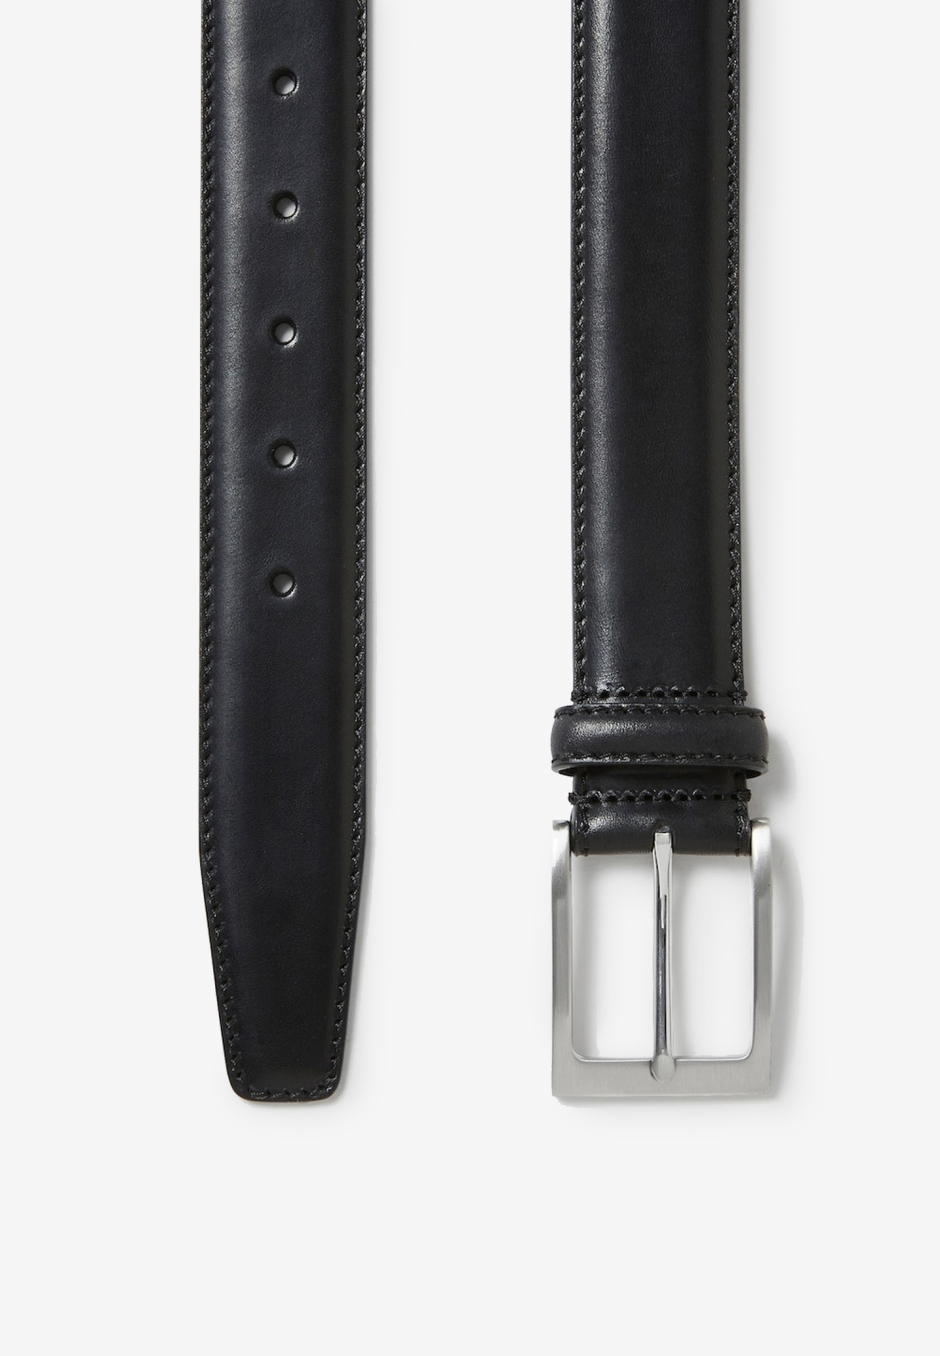 Saddler Odense Leather Belt